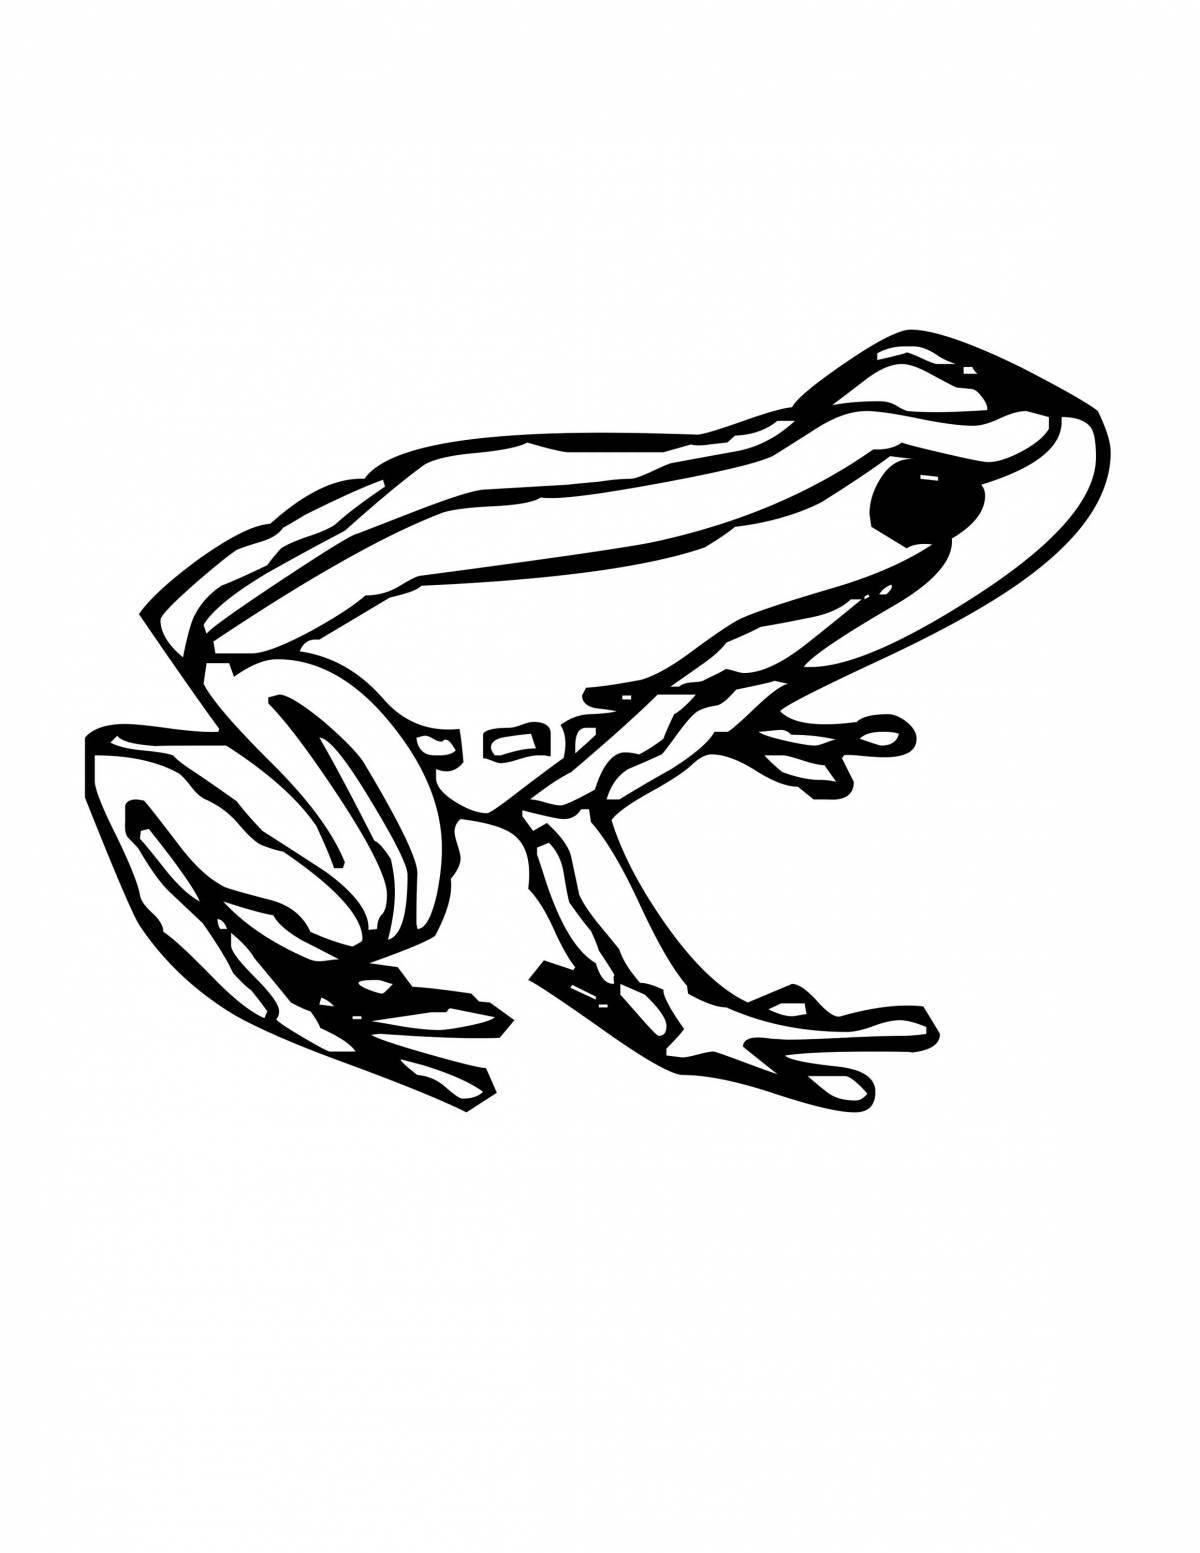 Dart frog coloring book